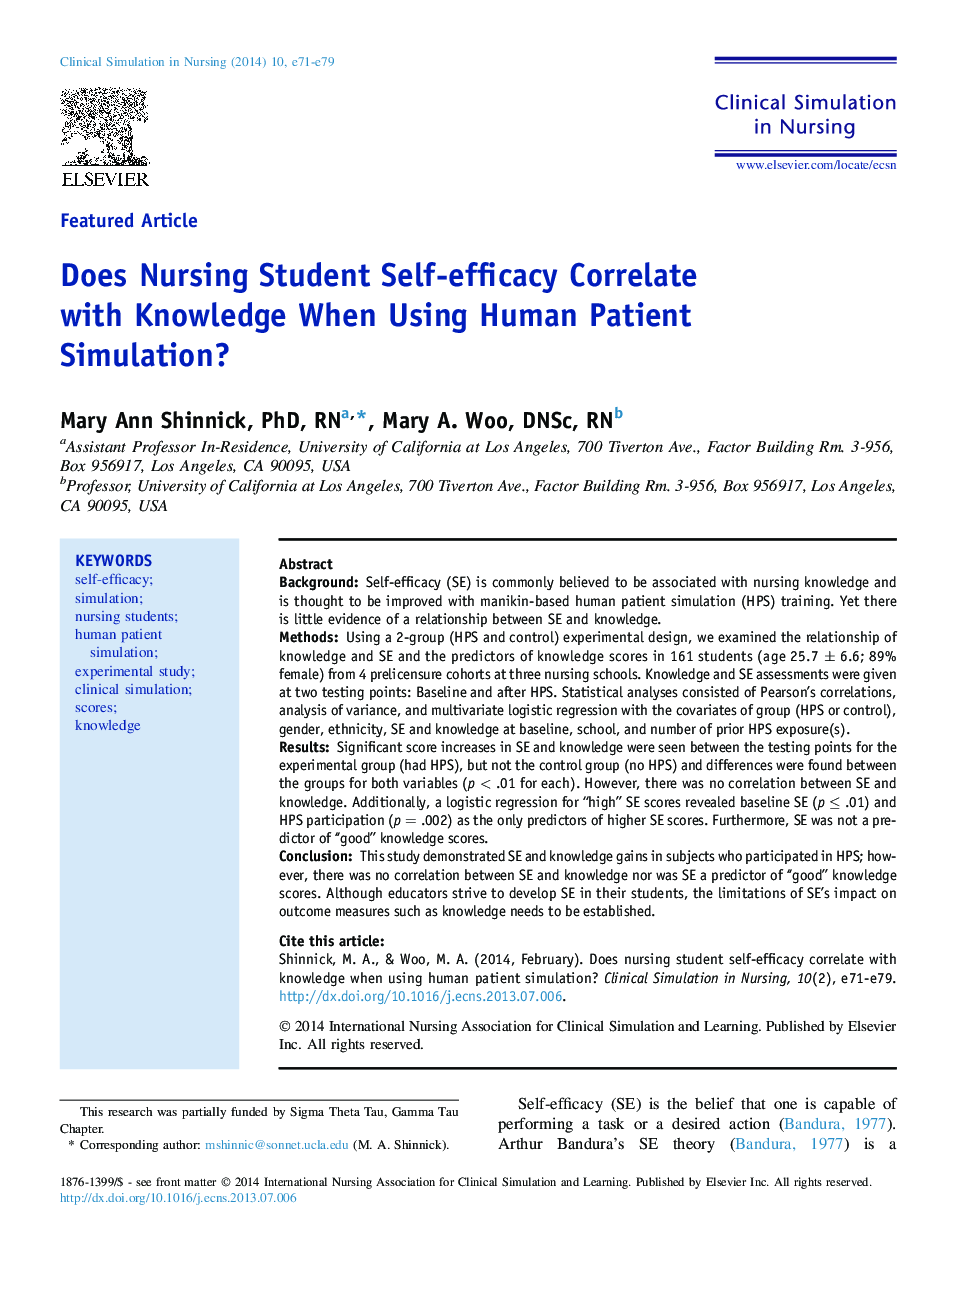 خودکارآمدی دانشجویان پرستاری ویژه با استفاده از دانش با استفاده از شبیه سازی بیمار انسانی؟ 